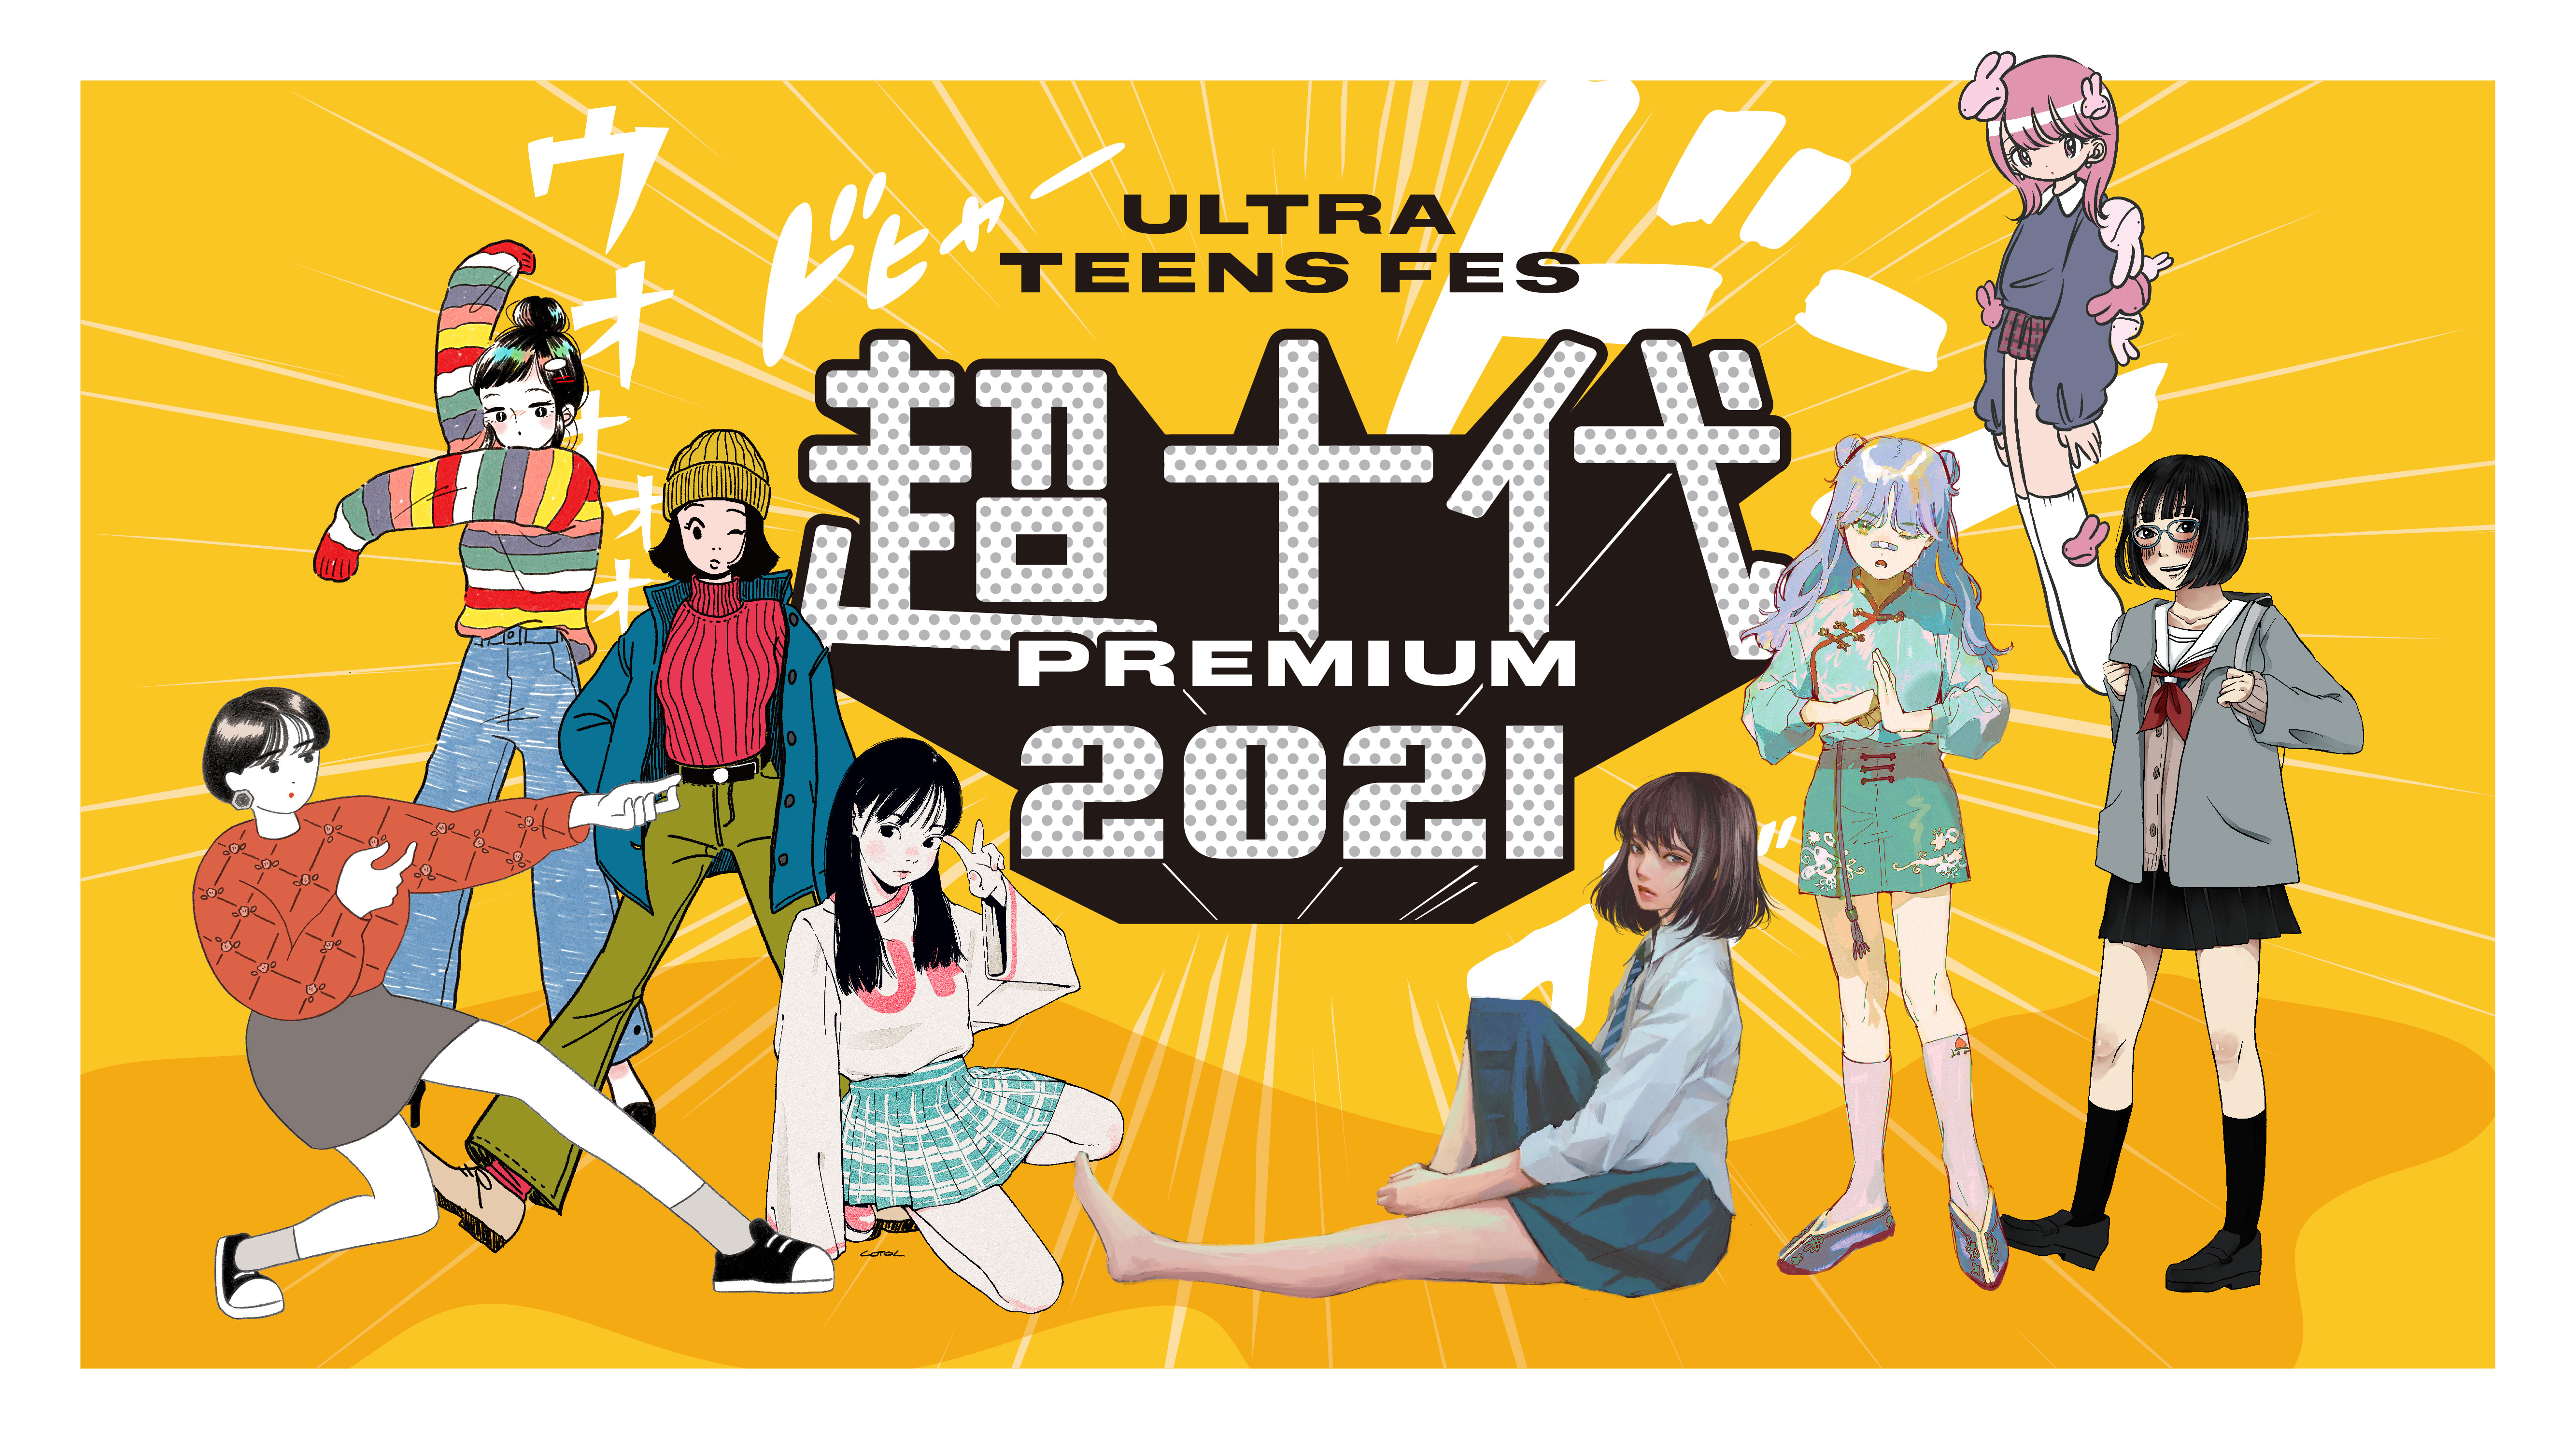 超十代 Ultra Teens Fes 21 Premium 開催 株式会社超十代のプレスリリース